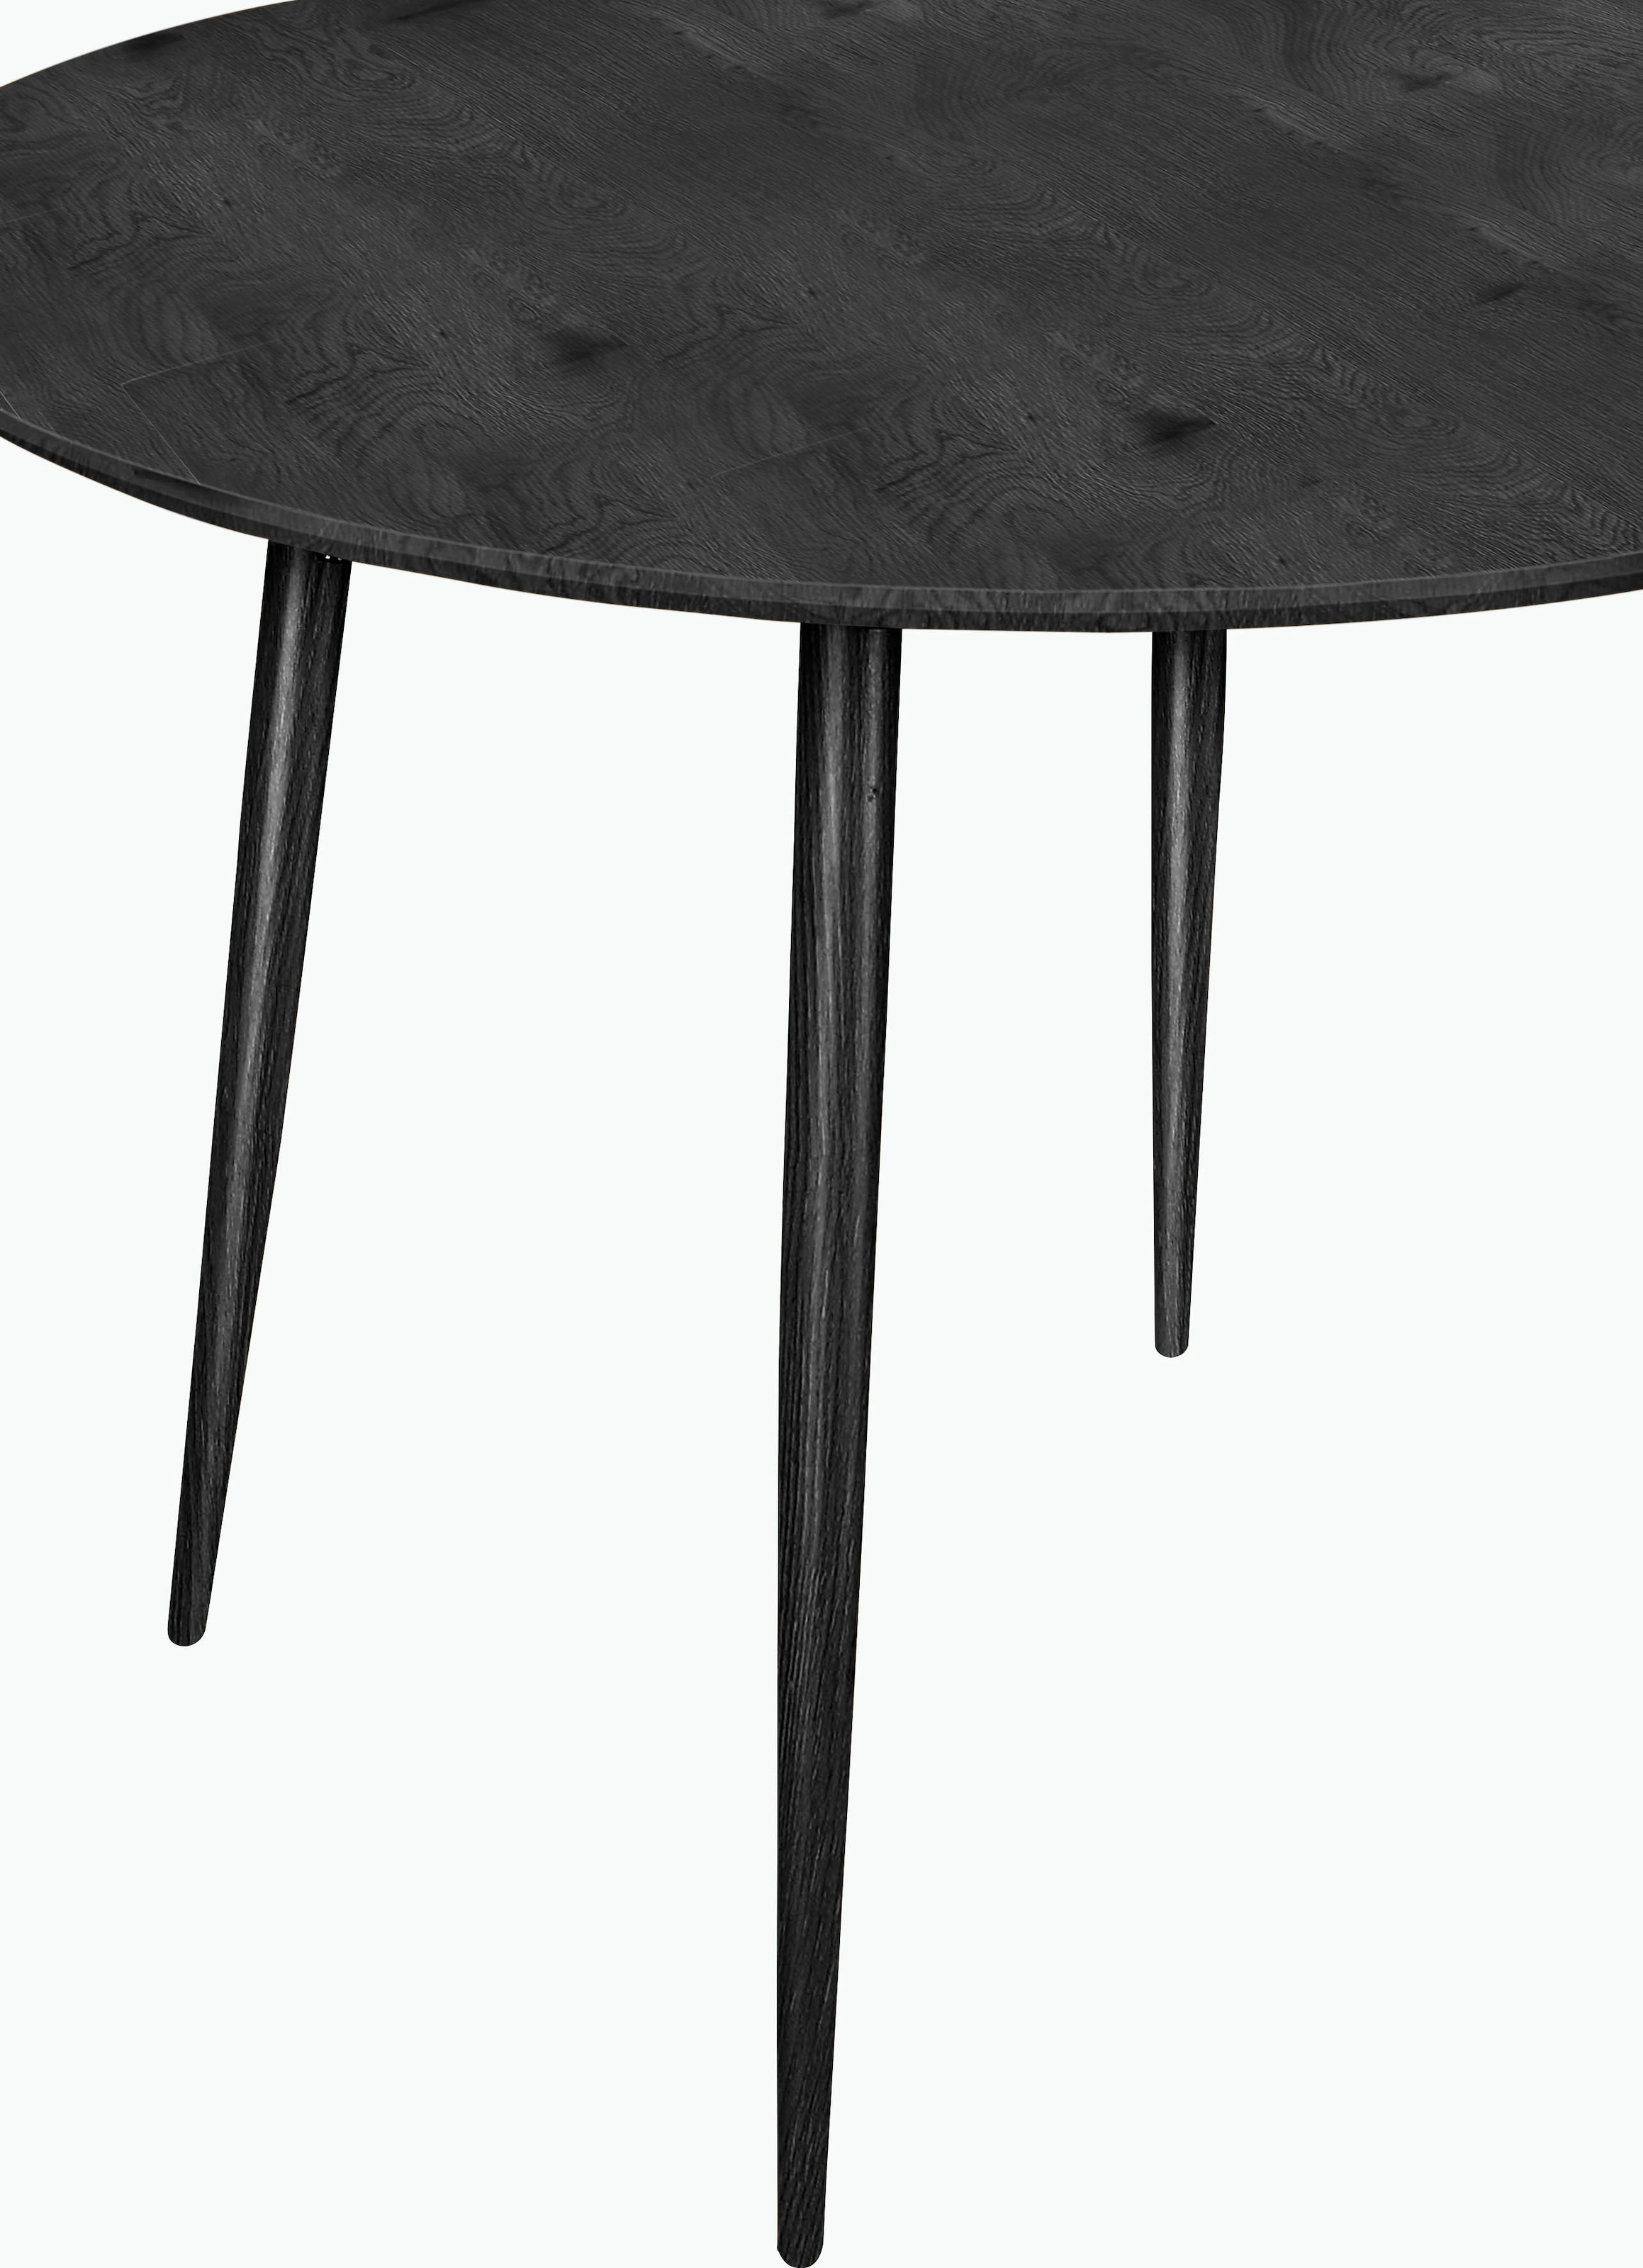 Leonique Essgruppe »Eadwine Esstisch rund marmorfarben, schwarz oder eichefarben100 Ø cm«, (Set, 5 tlg.), und 4 Stühle in verschiedenen Farben